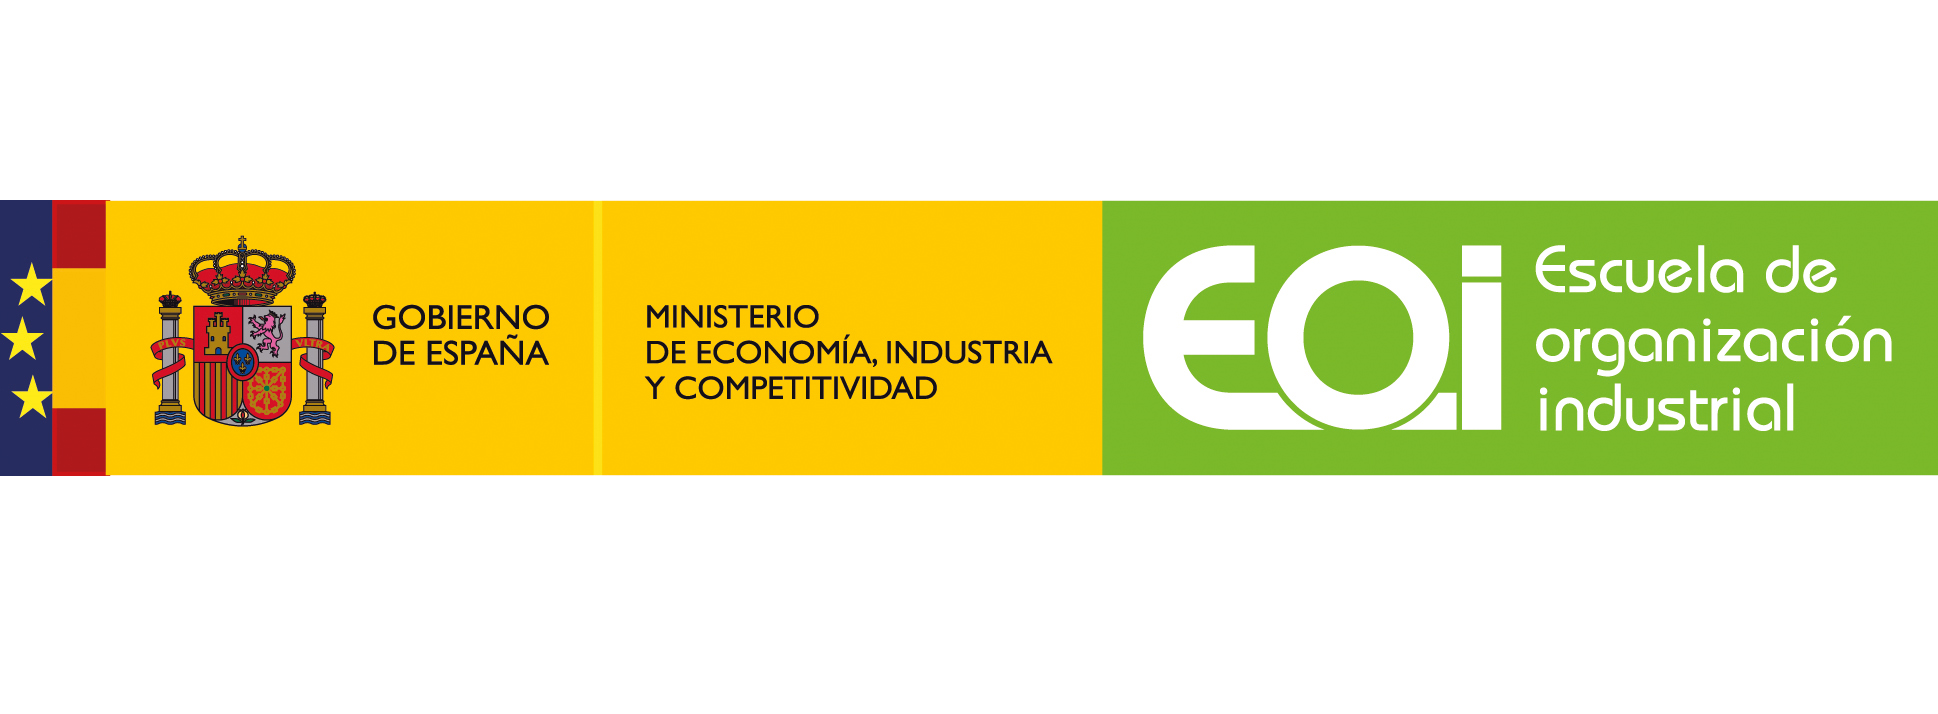 Image of Escuela de Organización Industrial